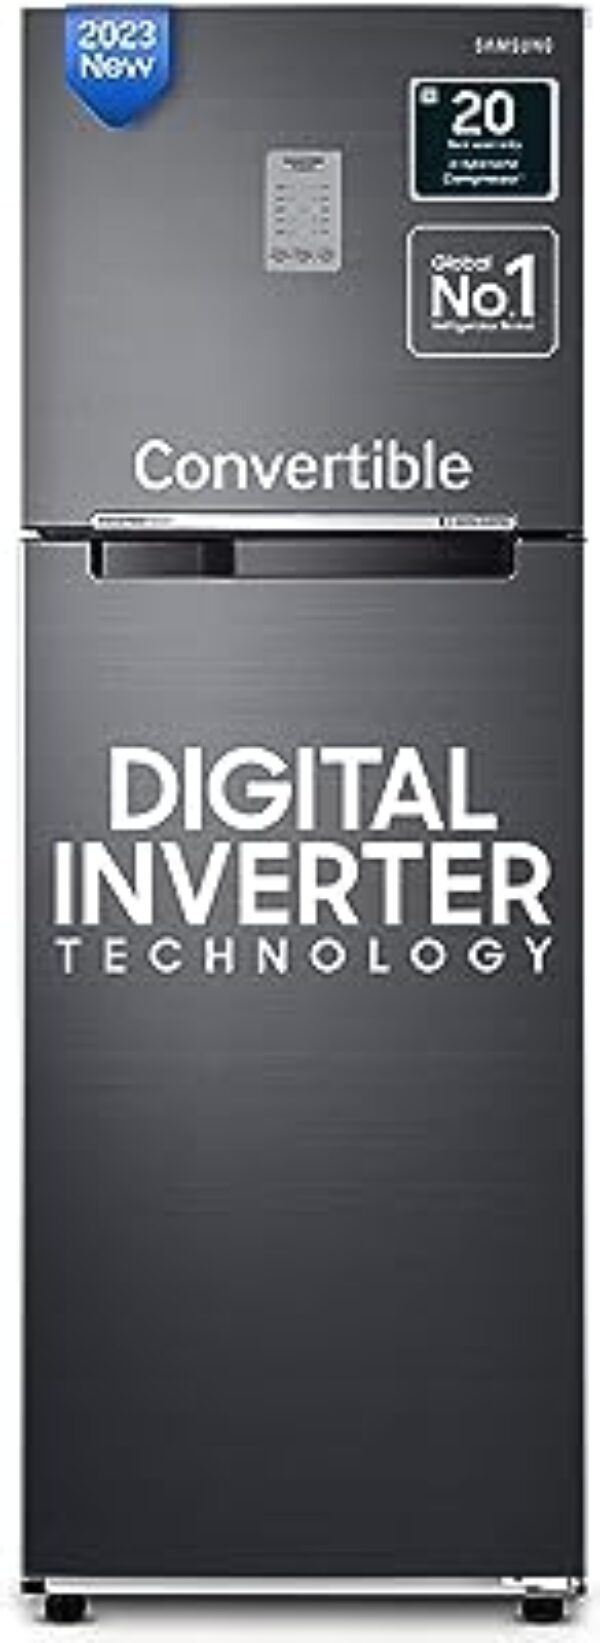 Samsung 256L Convertible Digital Inverter Refrigerator